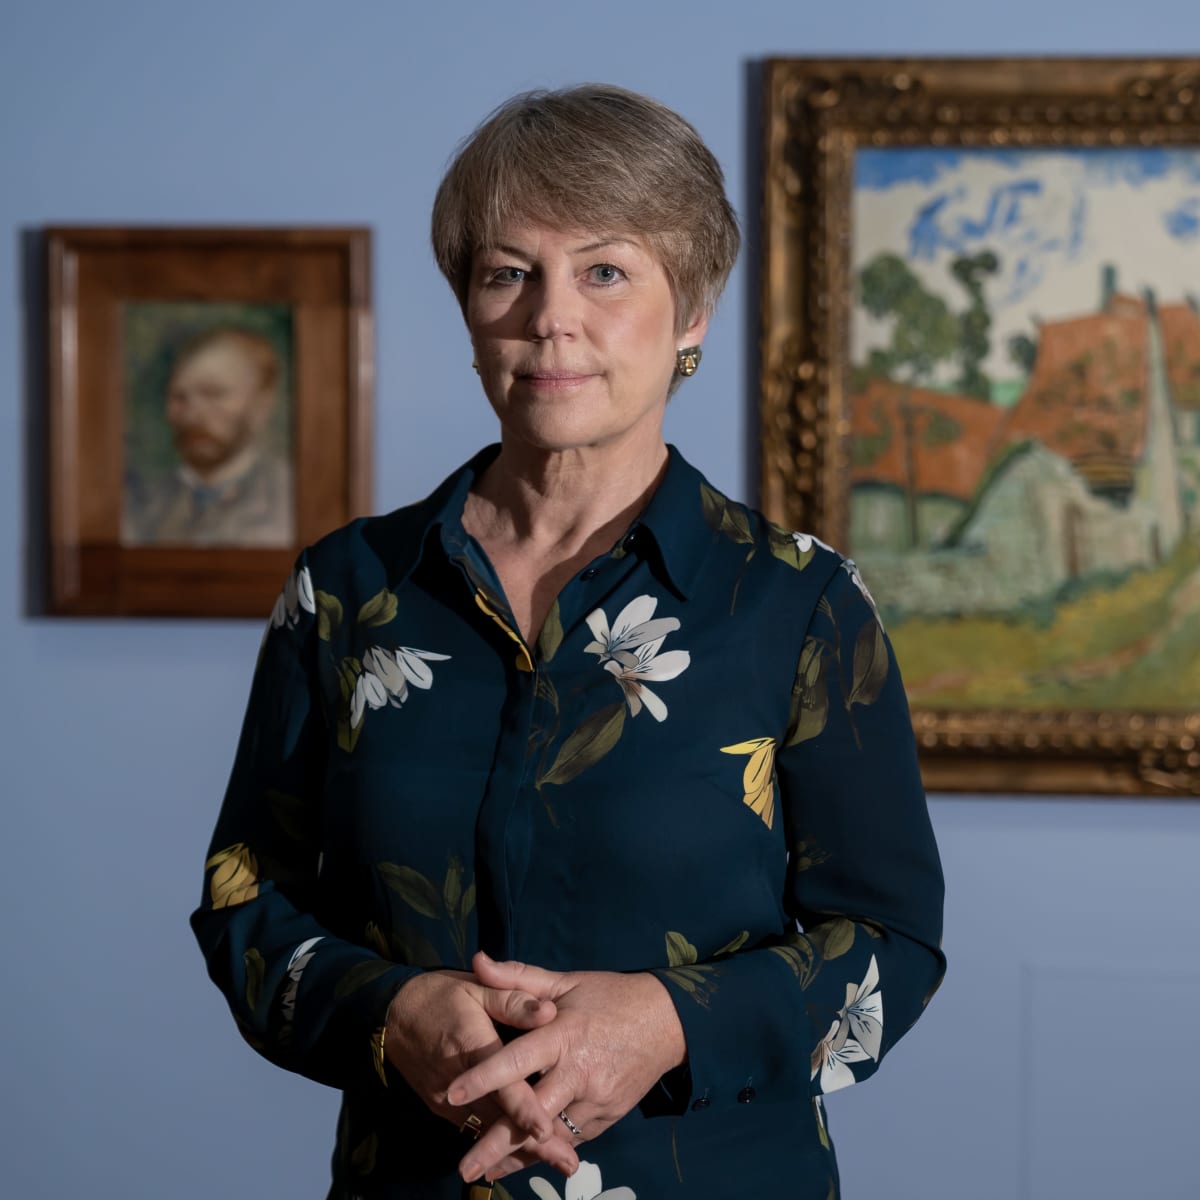 Didrichsenin taidemuseon johtaja Maria Didrichsen kuvattuna Vincent van Goghin "Tie taiteilijaksi" näyttelyssä, Kuusisaari, Helsinki, 2.9.2020.